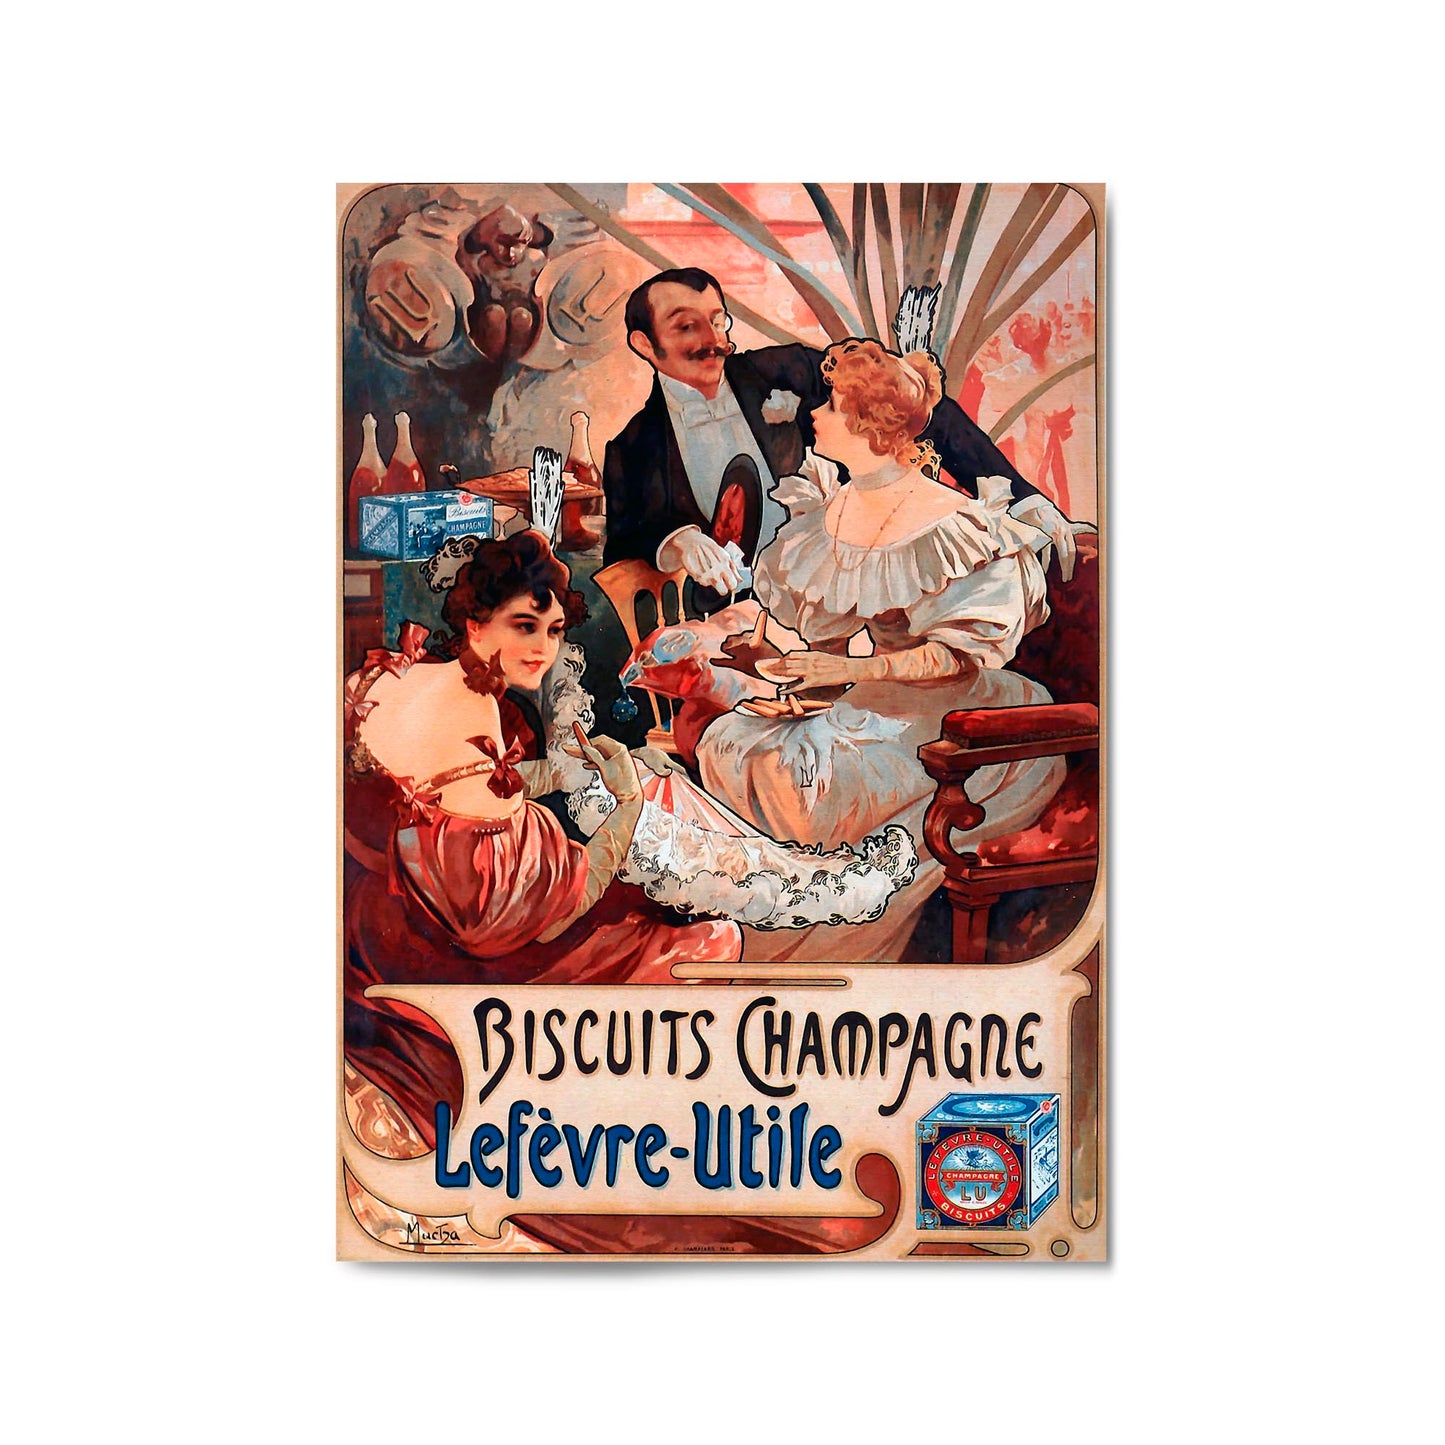 Biscuits Champagne "Lefevre-Utile" French Food | Framed Vintage Poster